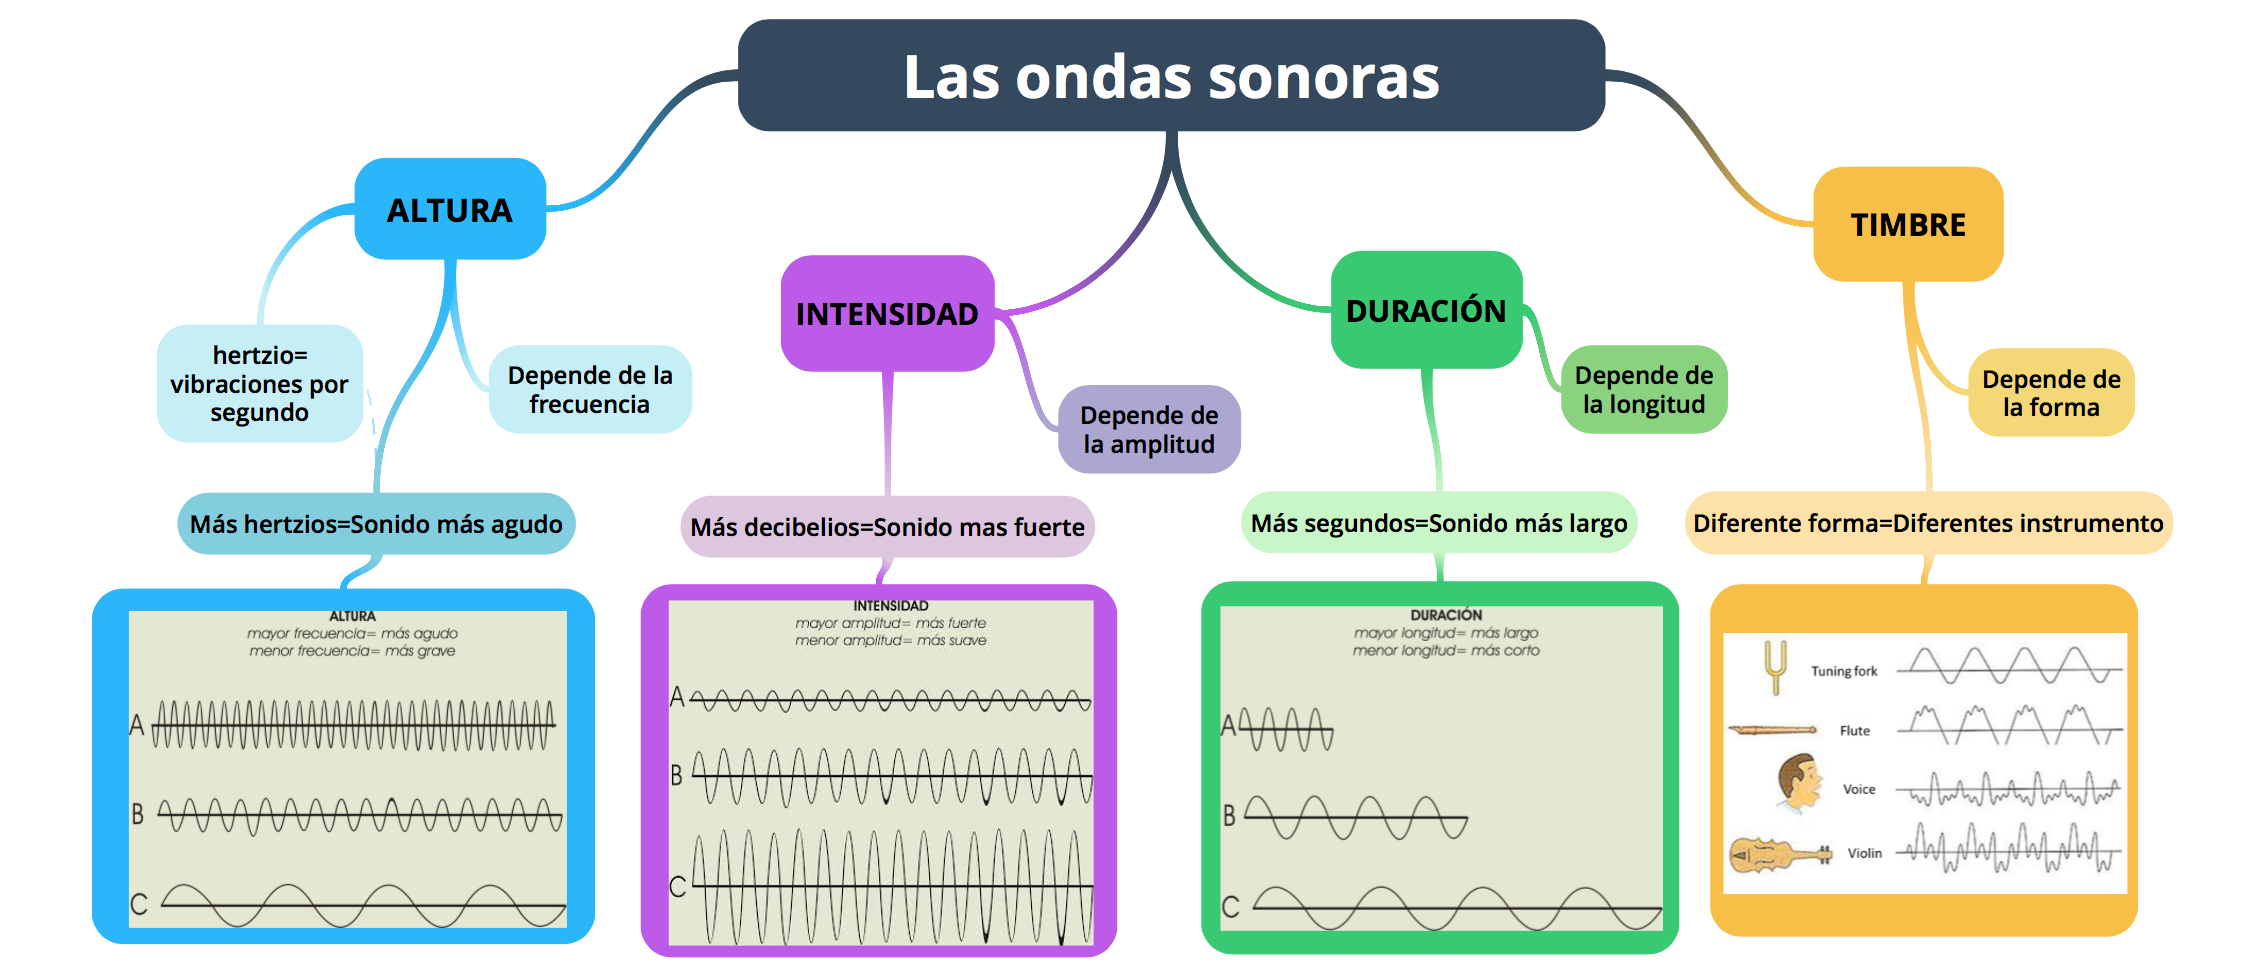 sonoras, representación gráfica del - DE MÚSICA 2.0